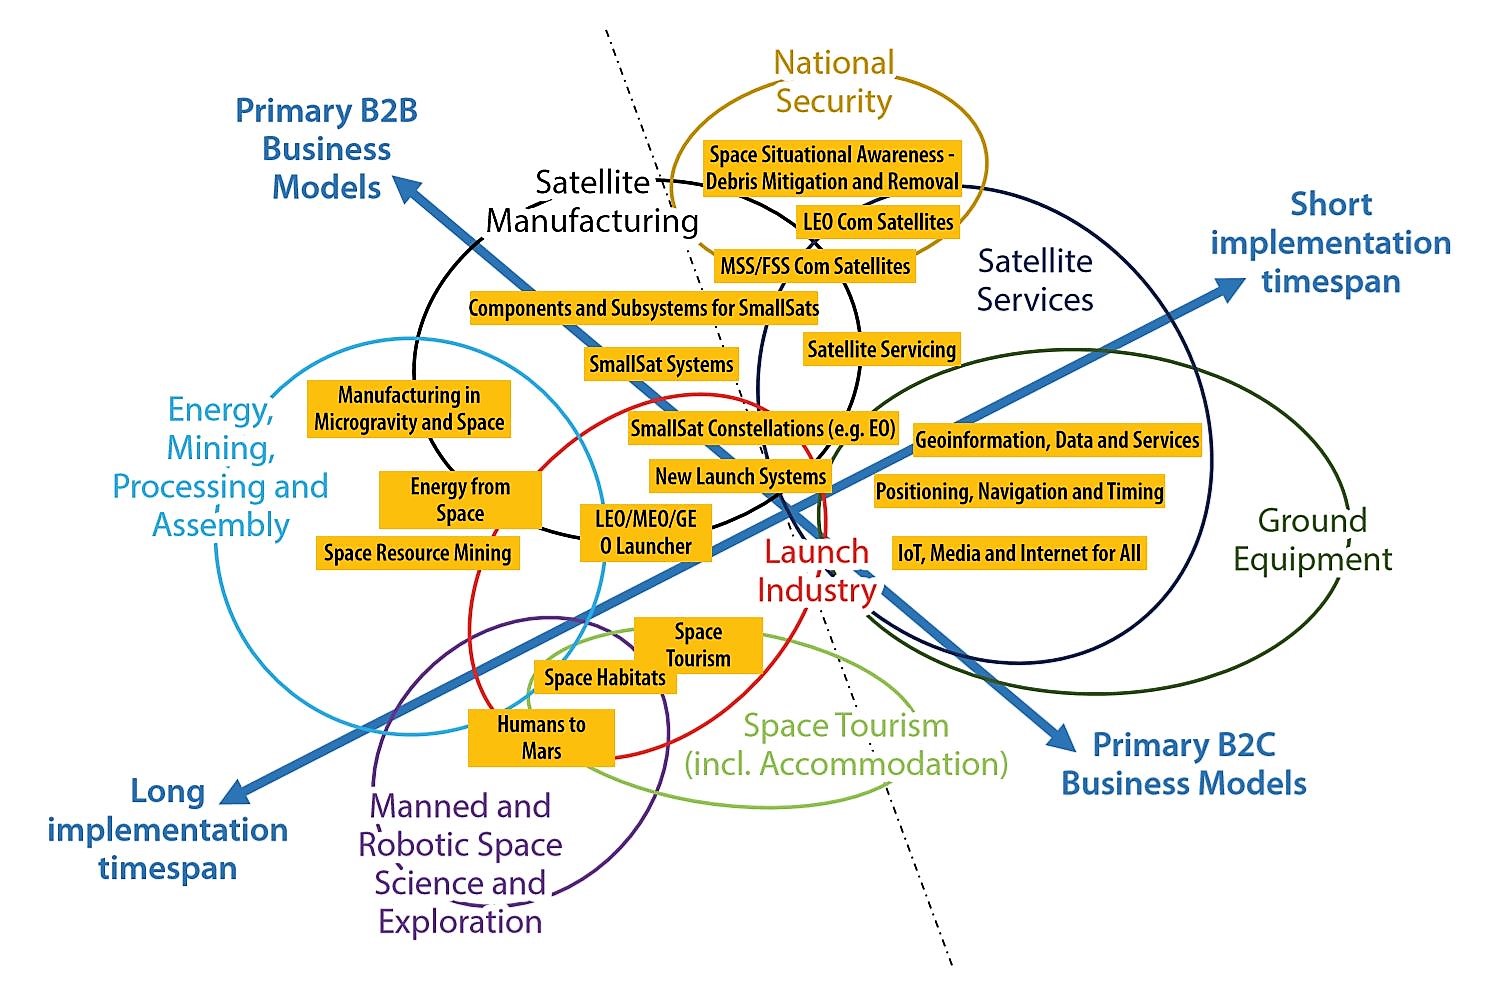 Schema von Dienstleistungen im Raumfahrtsektor, Geschäftsmodellen und -segmenten